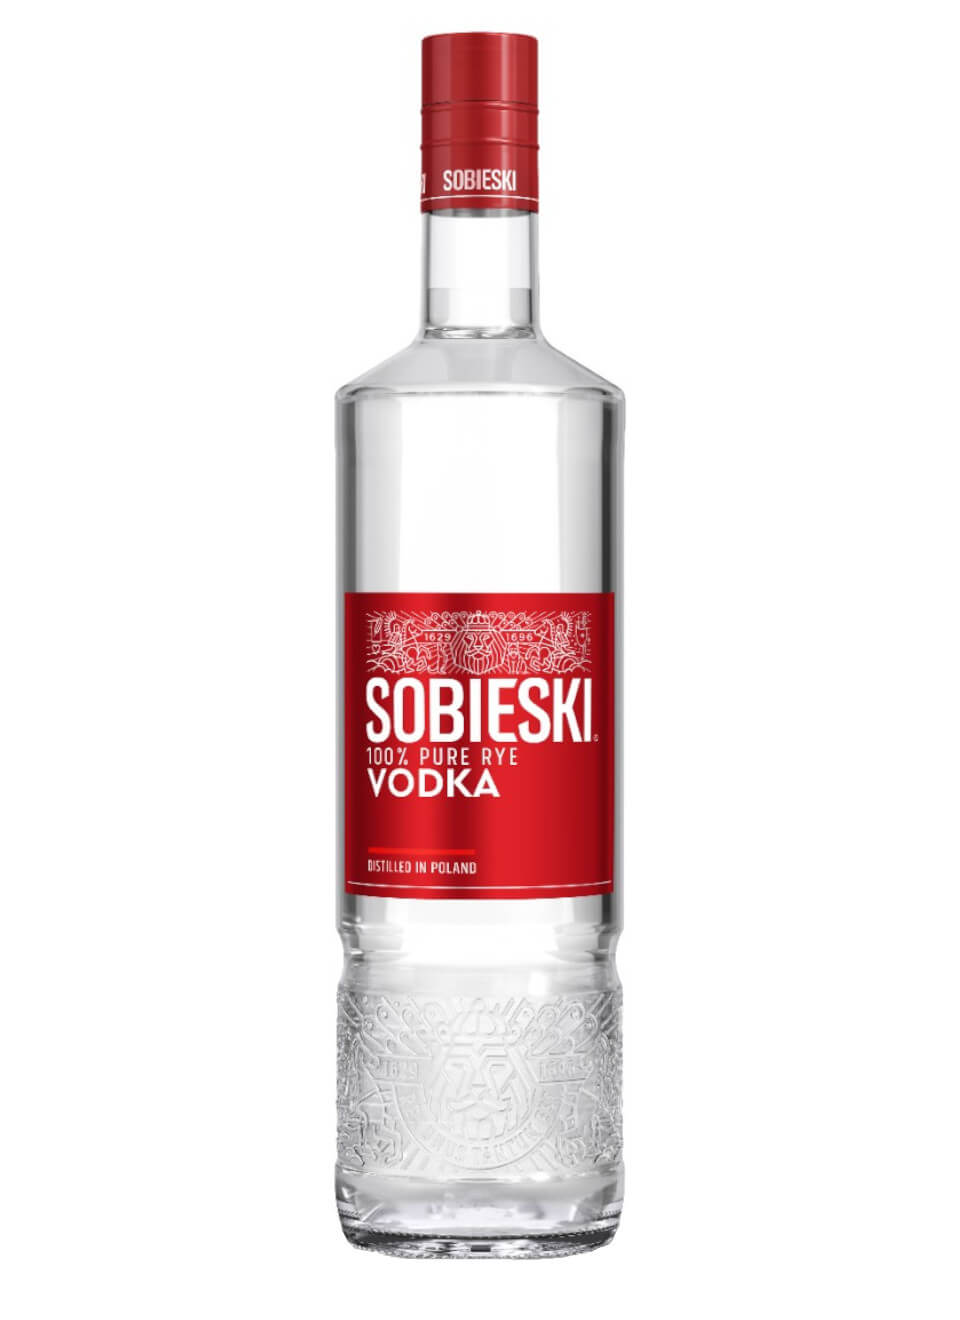 Wodka Ze Sliwek Popularna Na Balkanach Sobieski Vodka 0,7 L günstig kaufen | Spirituosenworld.de - Online Shop für Spirituosen und